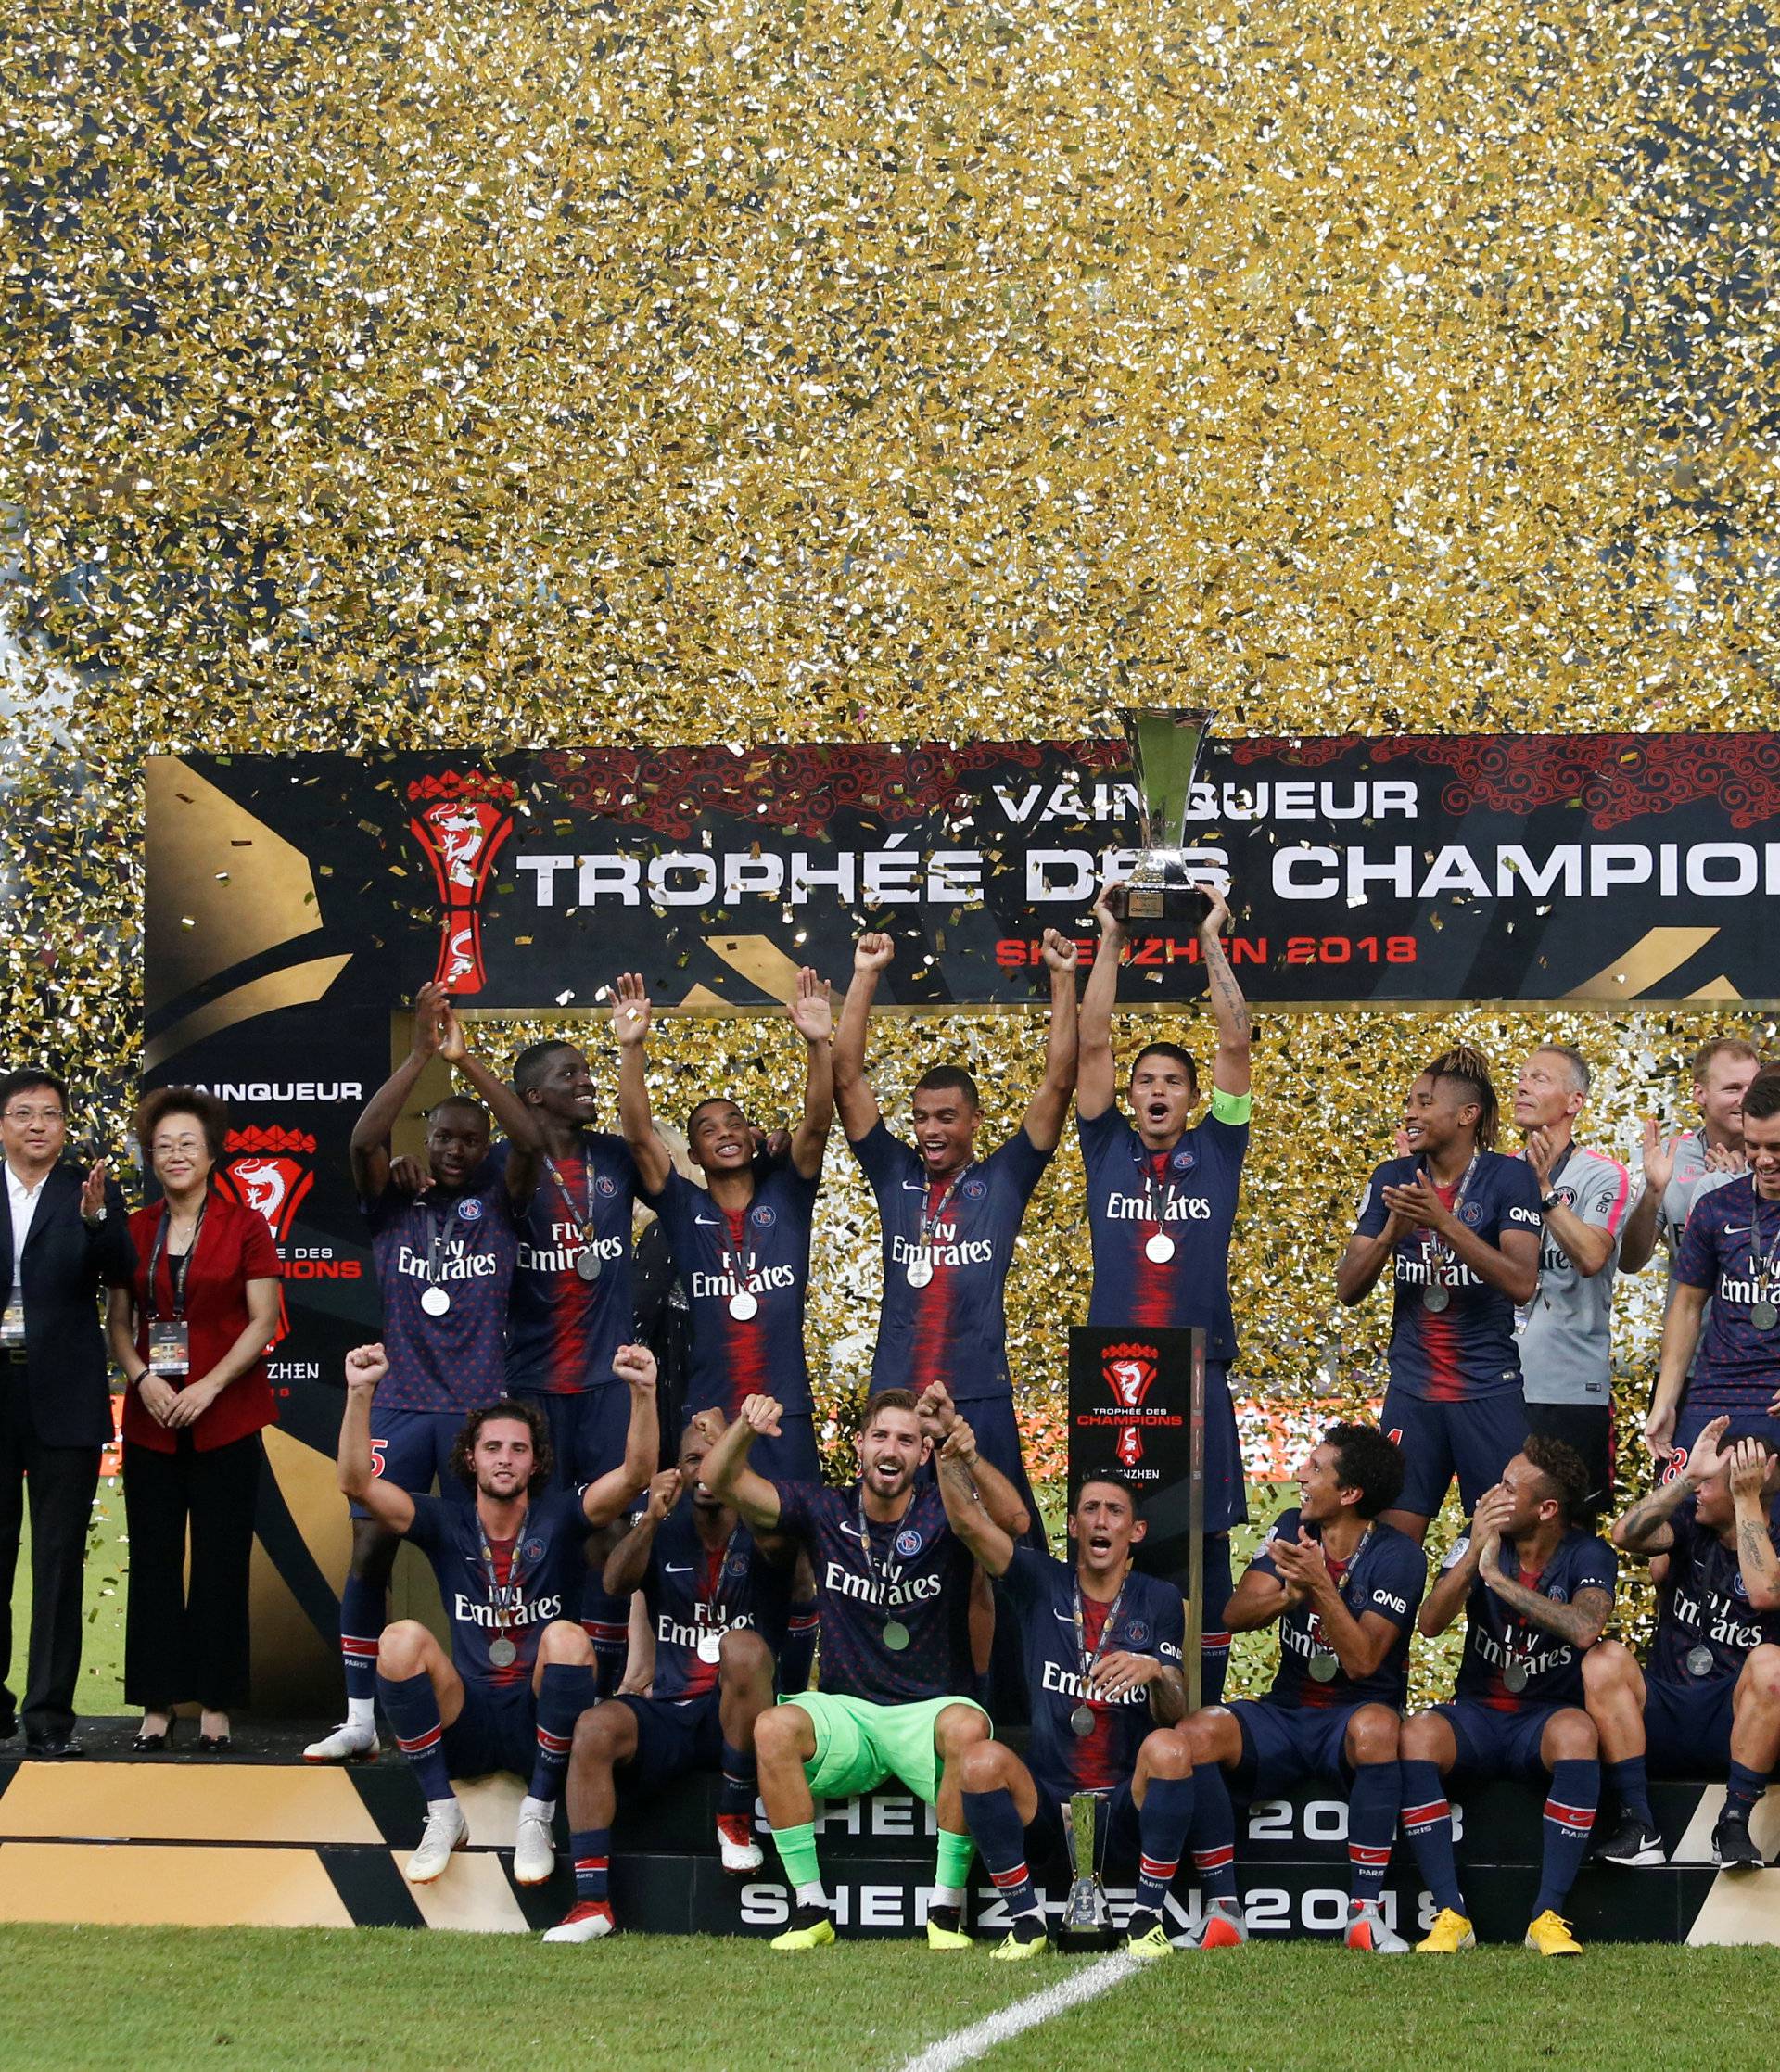 French Super Cup Trophee des Champions - Paris St Germain v AS Monaco